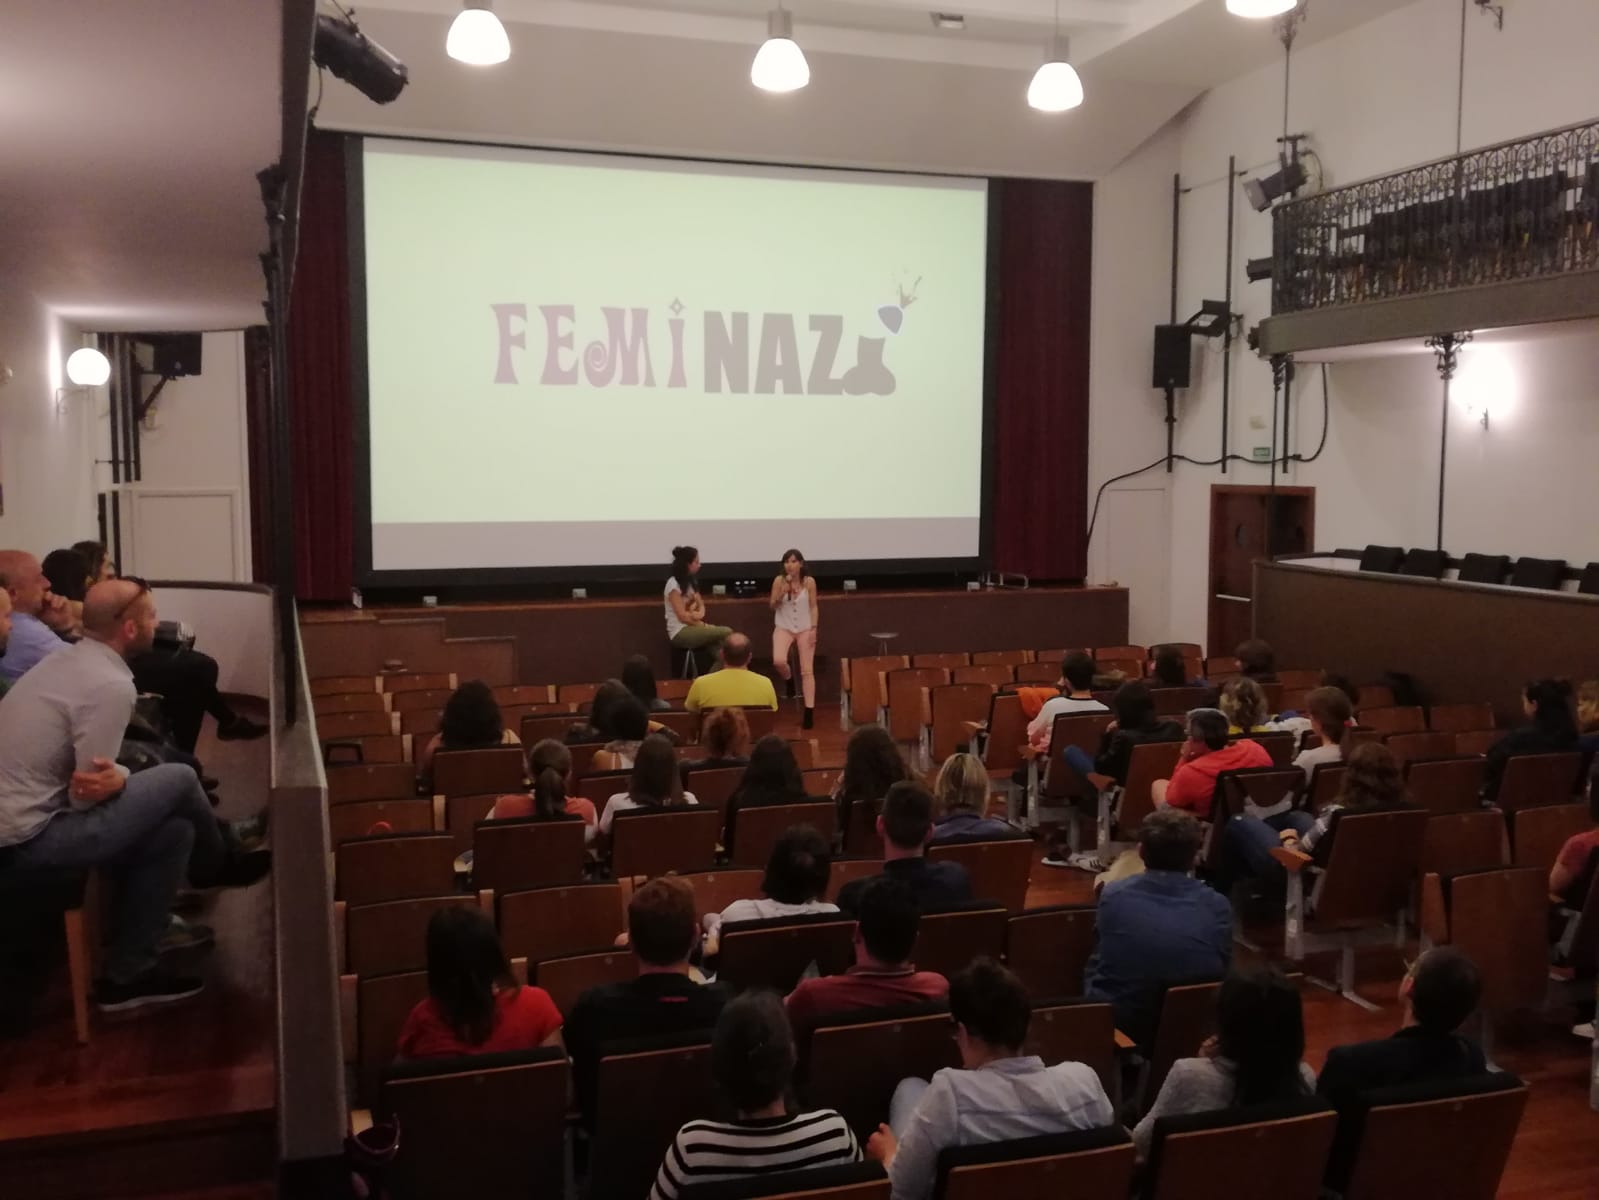 Feminazi-Vilagarcia-Festivala-Mulleres-Creando